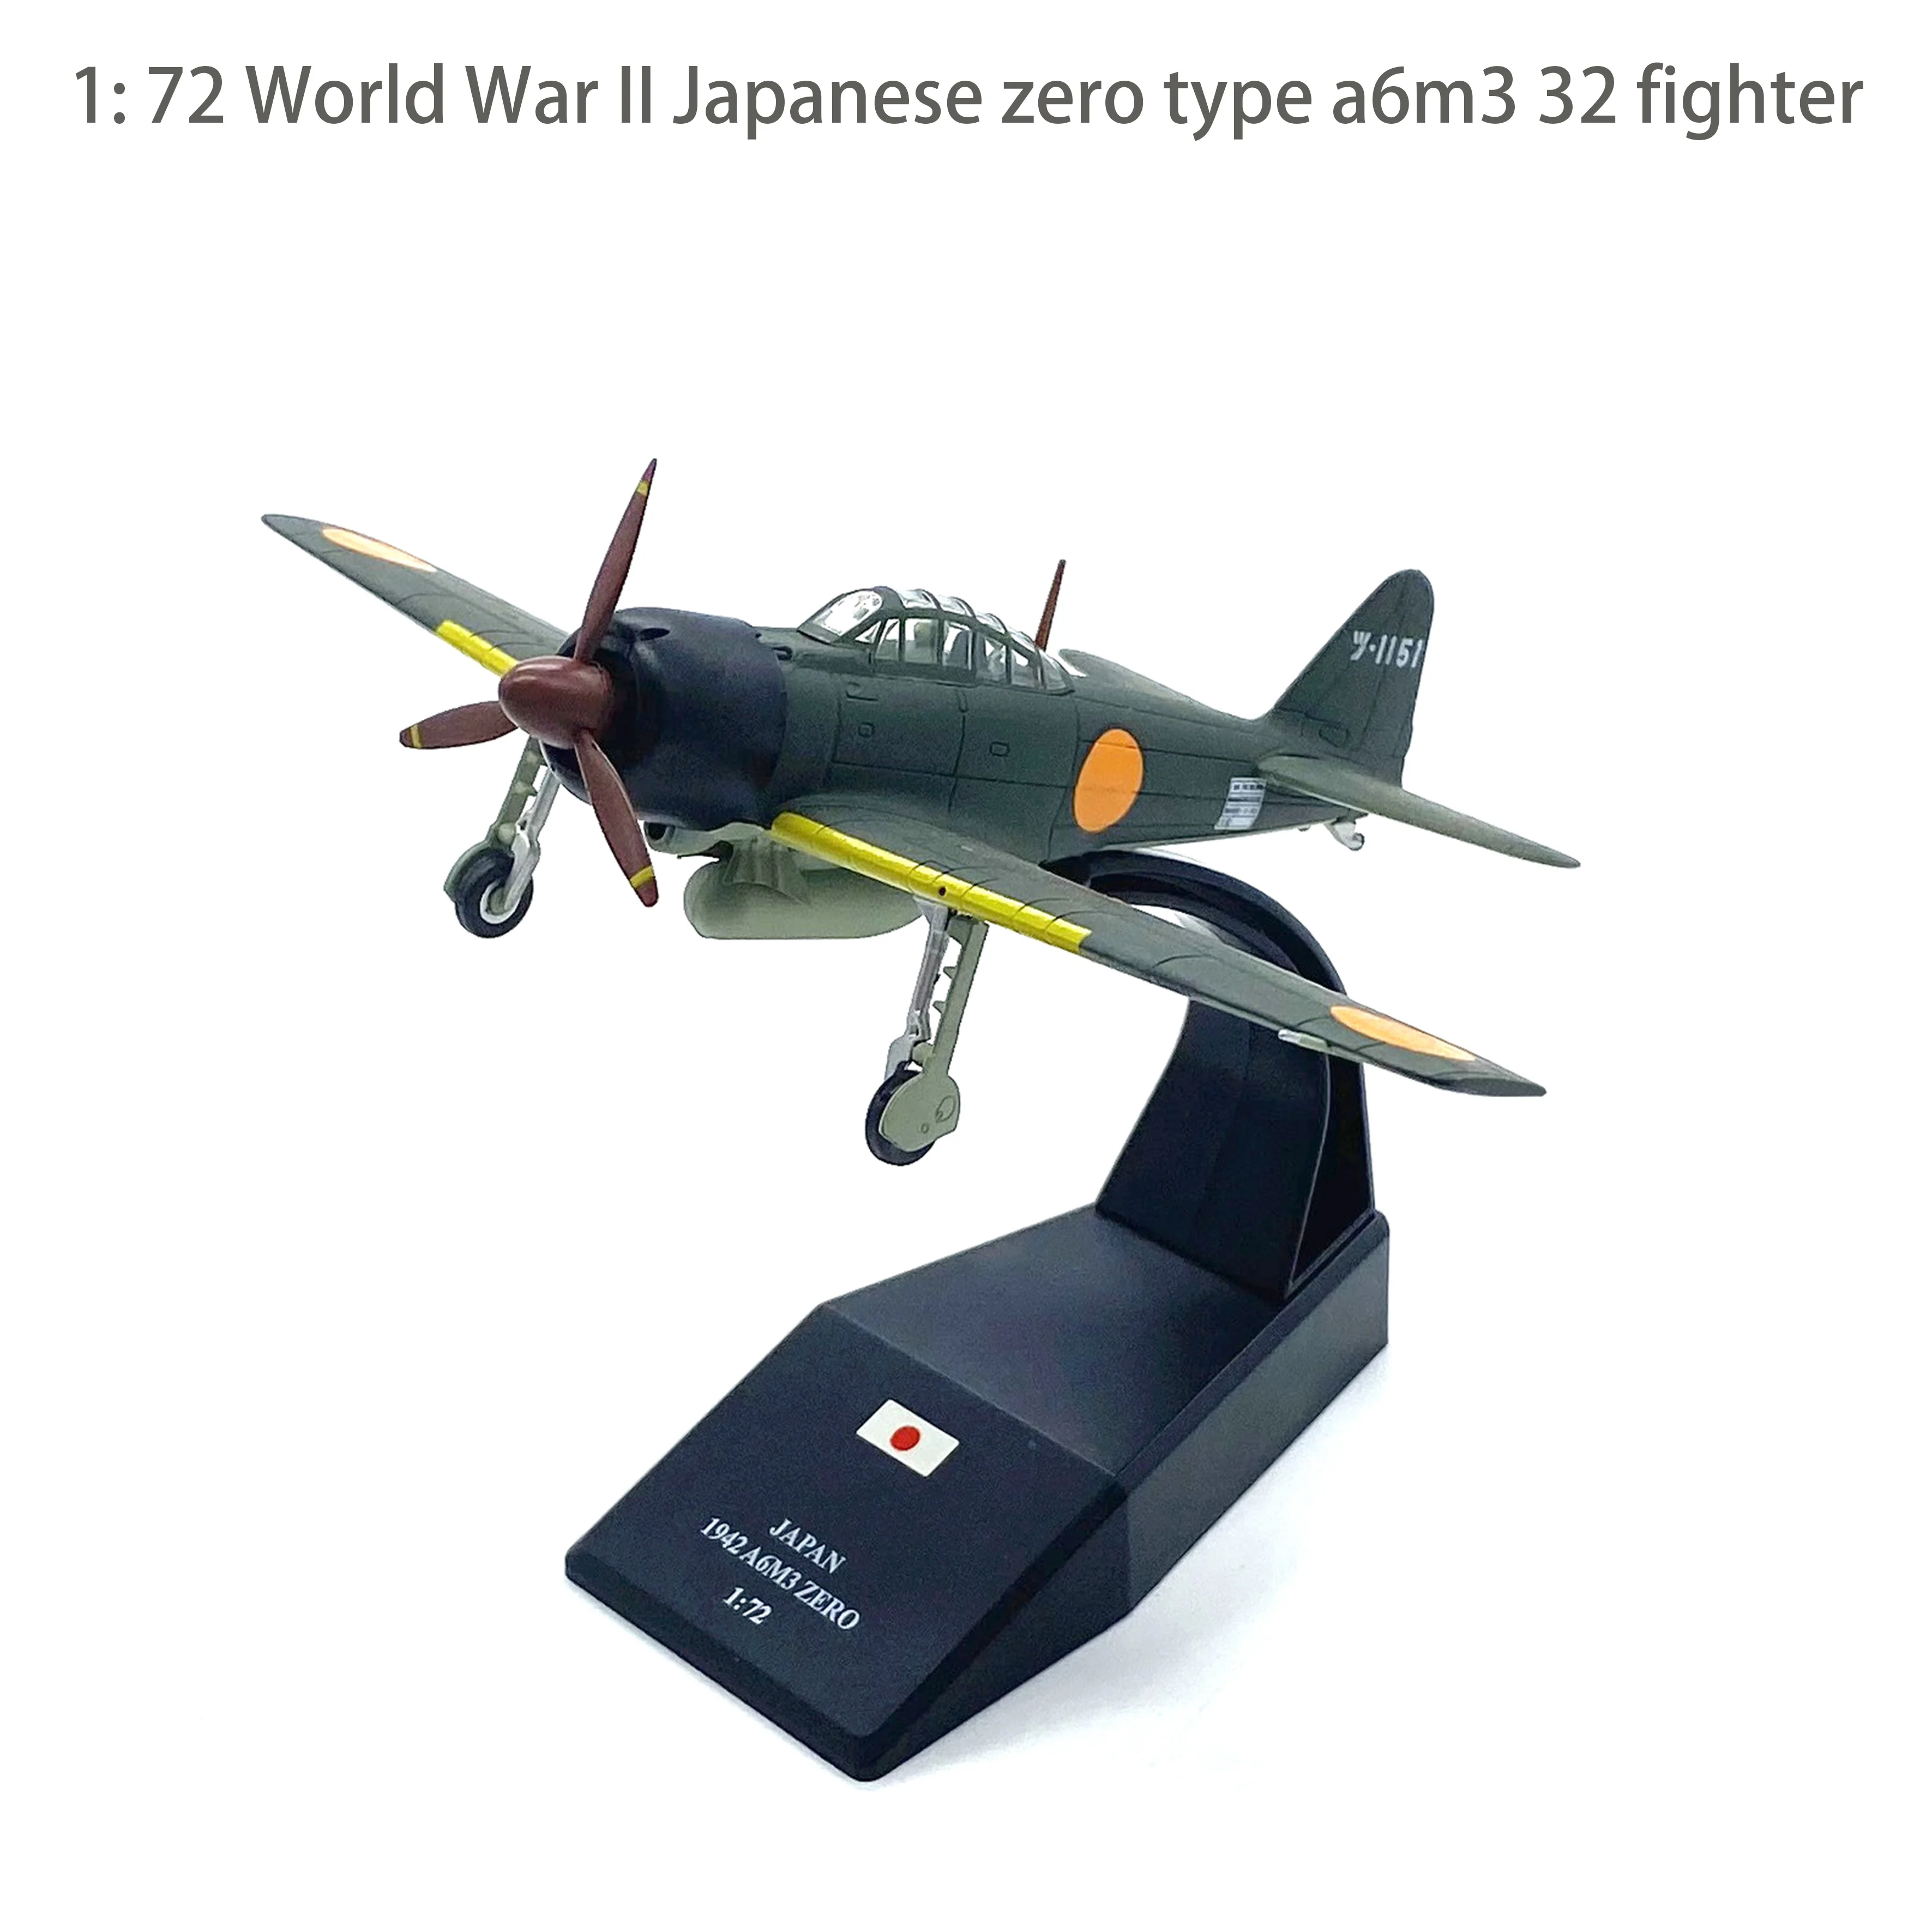 

1: 72 Второй мировой войны японский нулевой тип a6m3 32 истребитель Midway Морской бой модель самолета из сплава